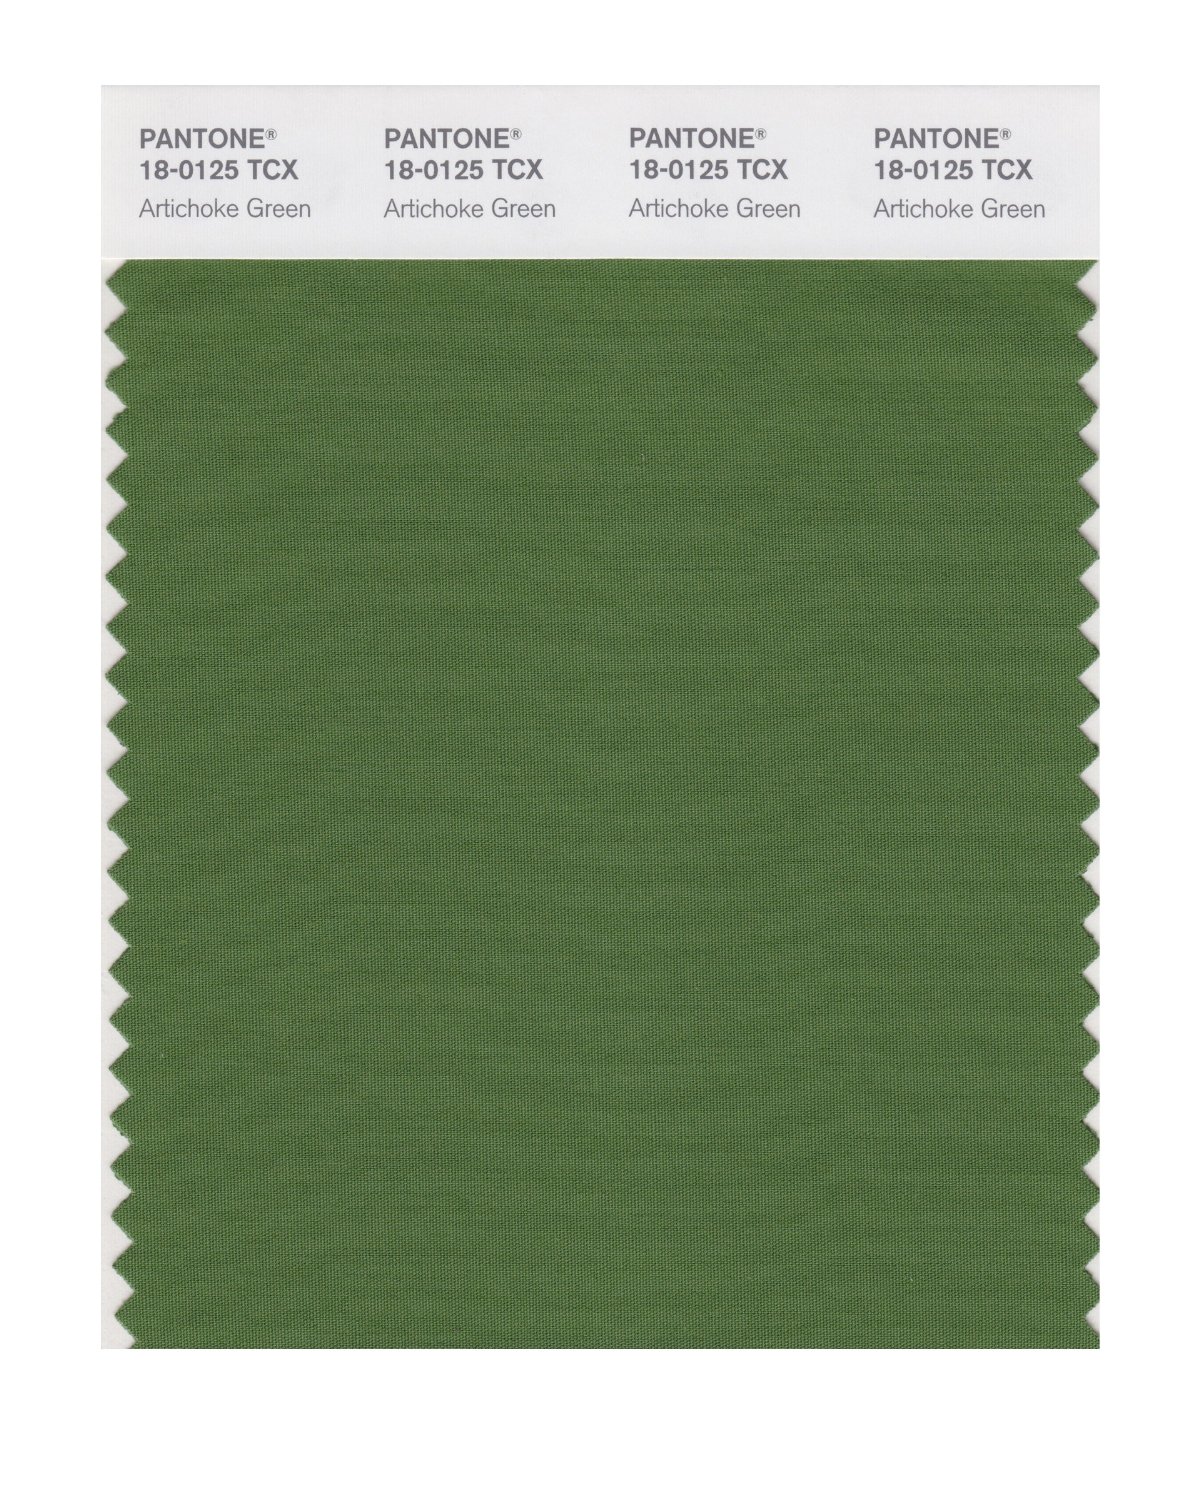 Pantone Cotton Swatch 18-0125 Artichoke Green